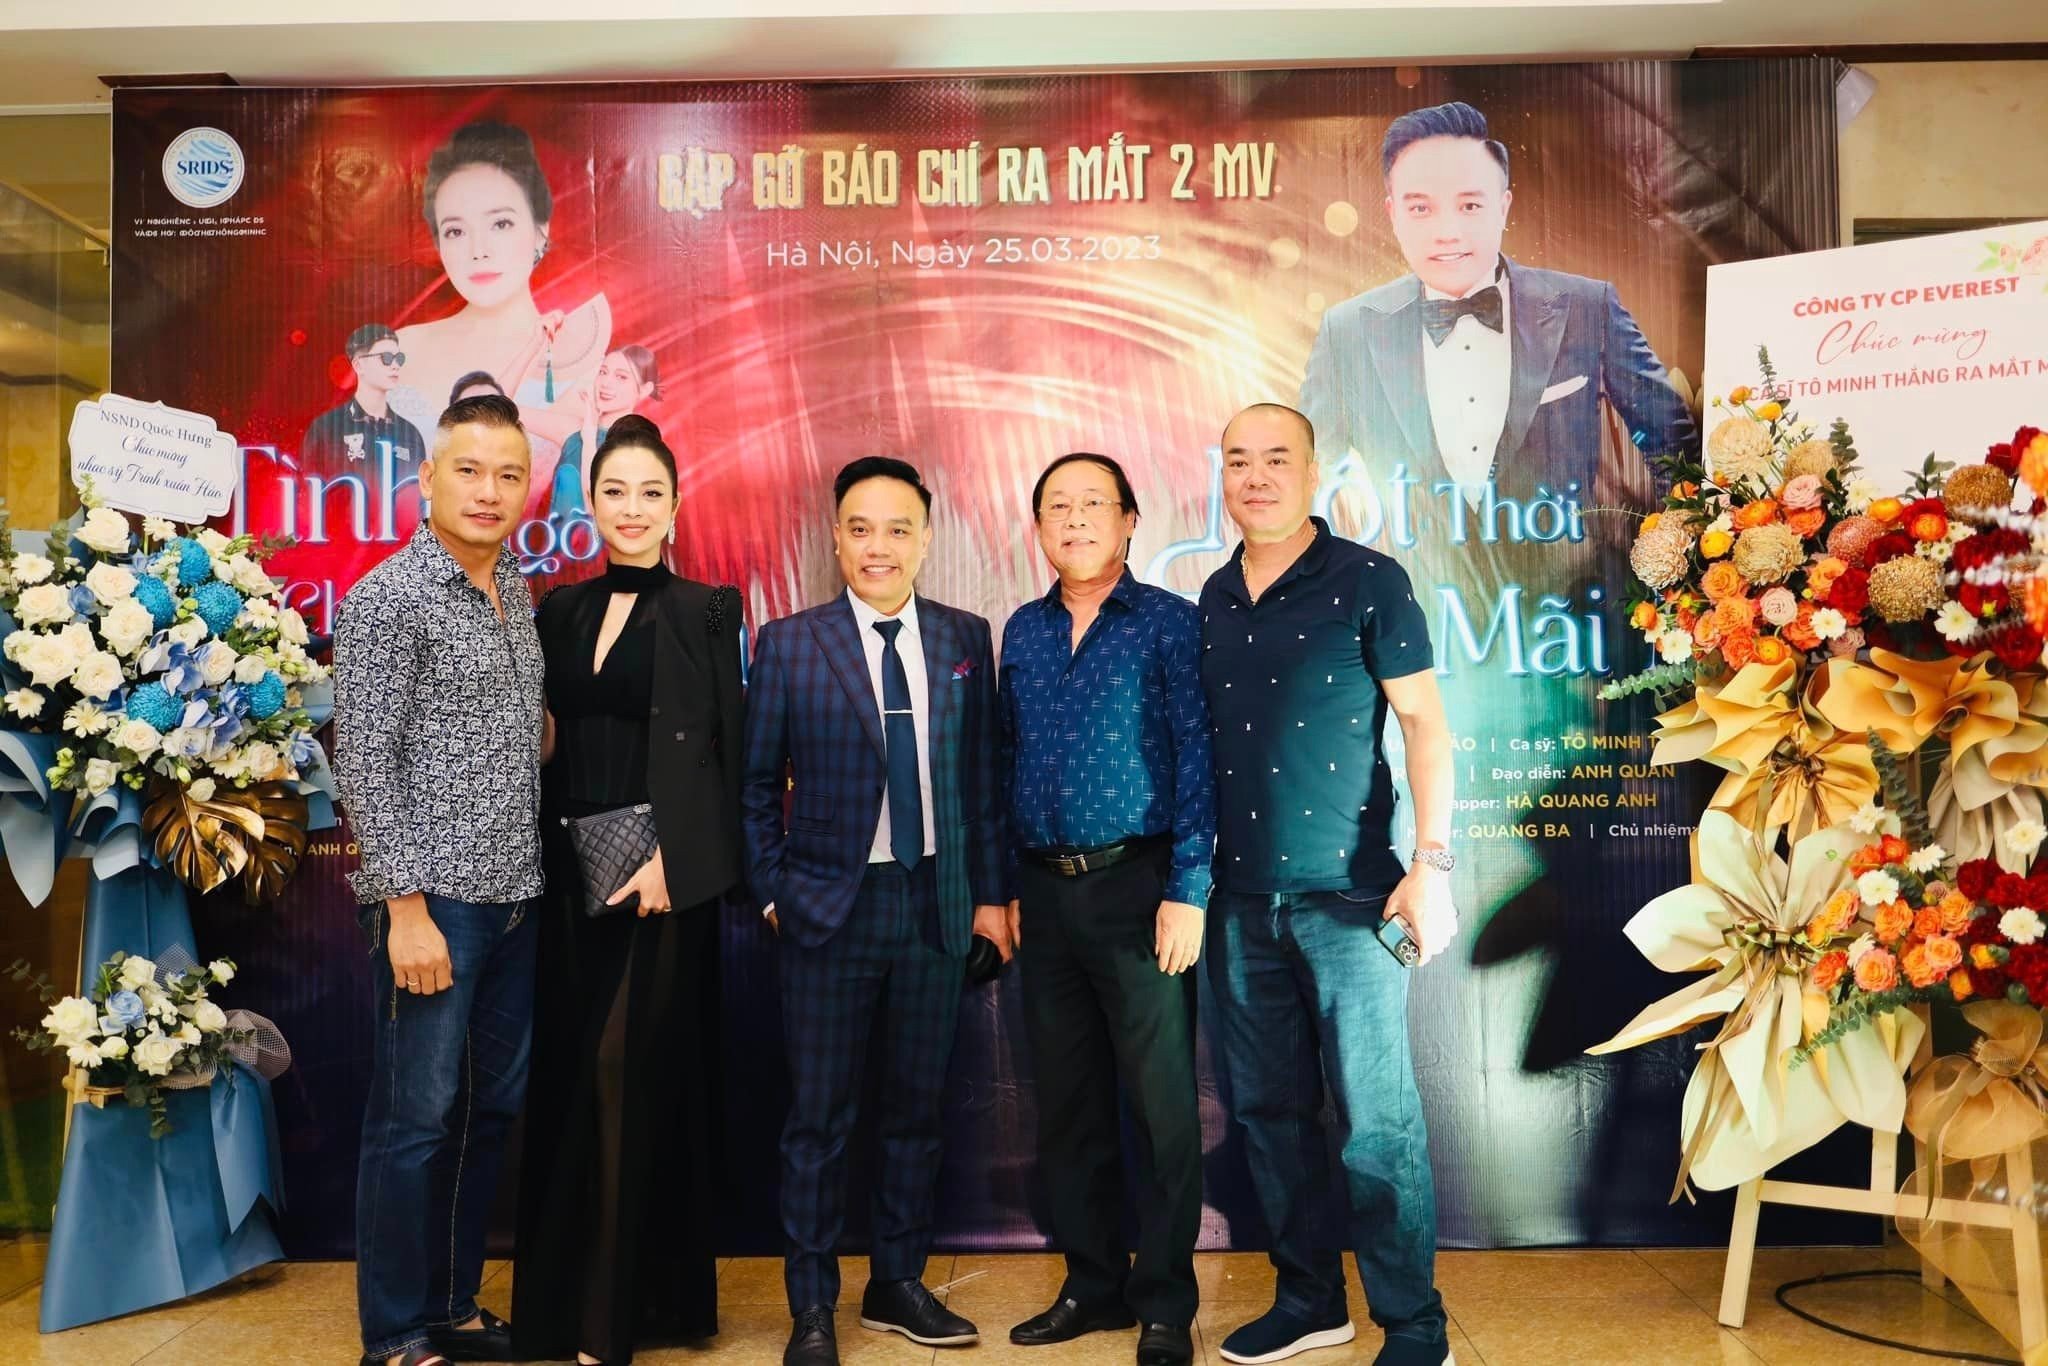 Vợ chồng Jennifer Phạm cùng nhiều vị khách quý tới chúc mừng nhạc sĩ Trịnh Xuân Hảo ra mắt 2 MV mới